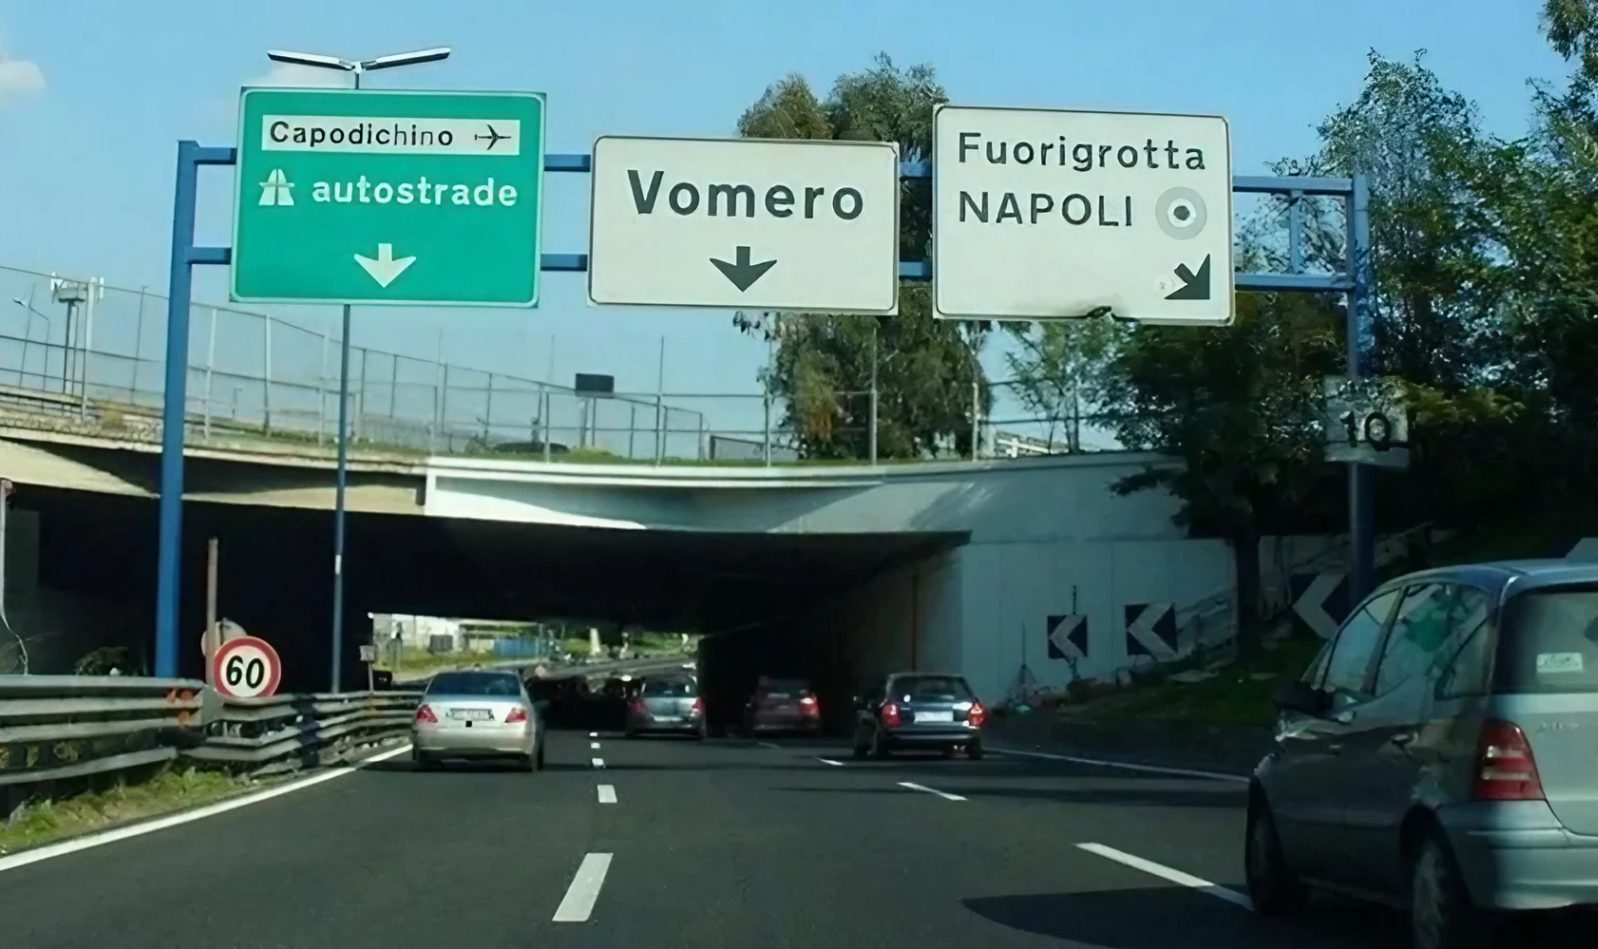 那不勒斯环路，Vomero Fuorigrotta 出口